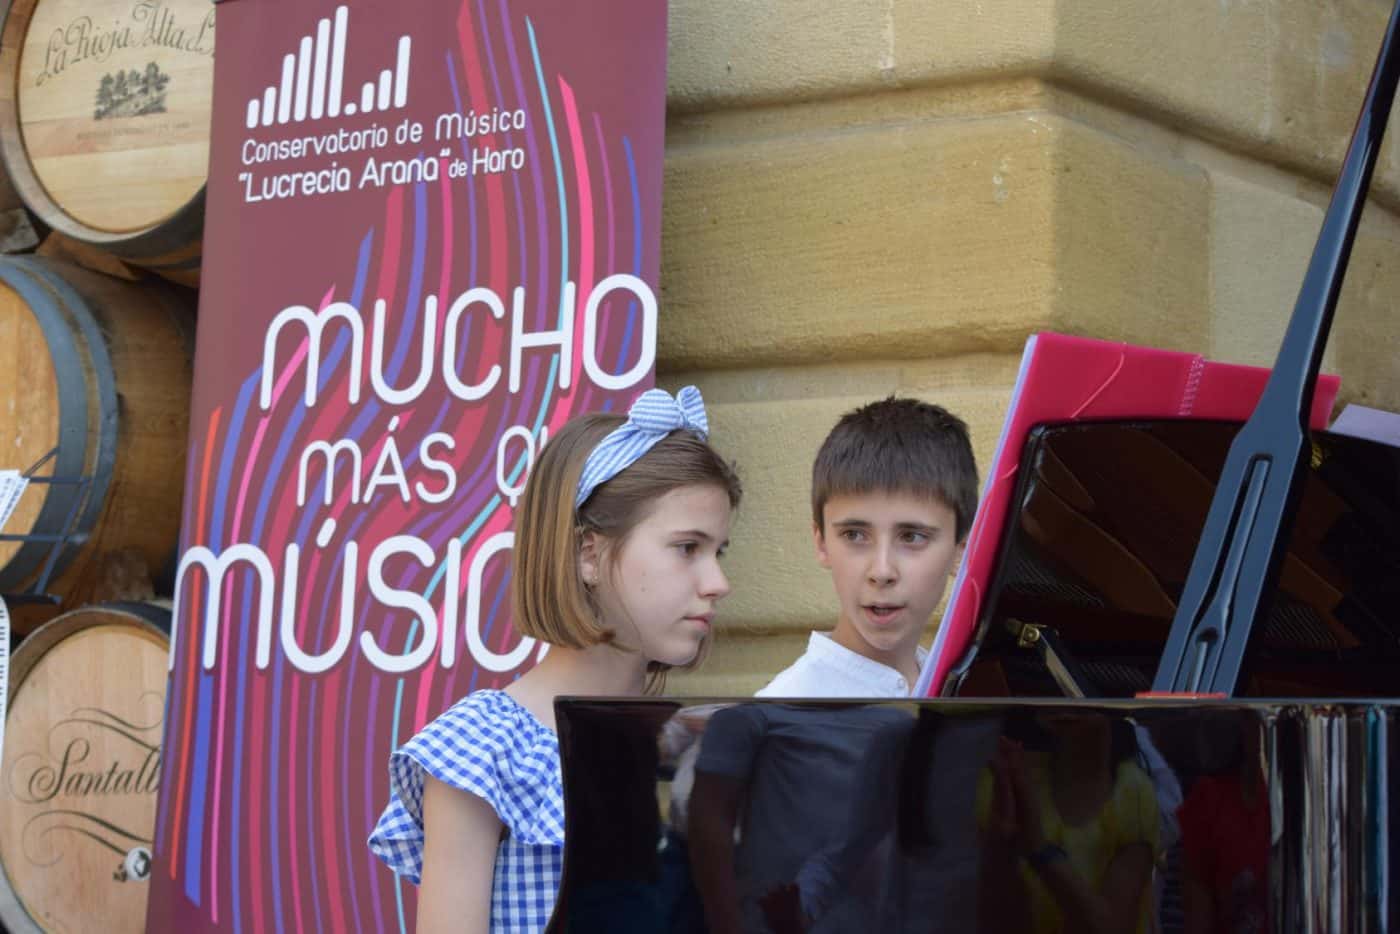 FOTOS: El Conservatorio Lucrecia Arana celebra el fin de curso sacando la música a la calle 23